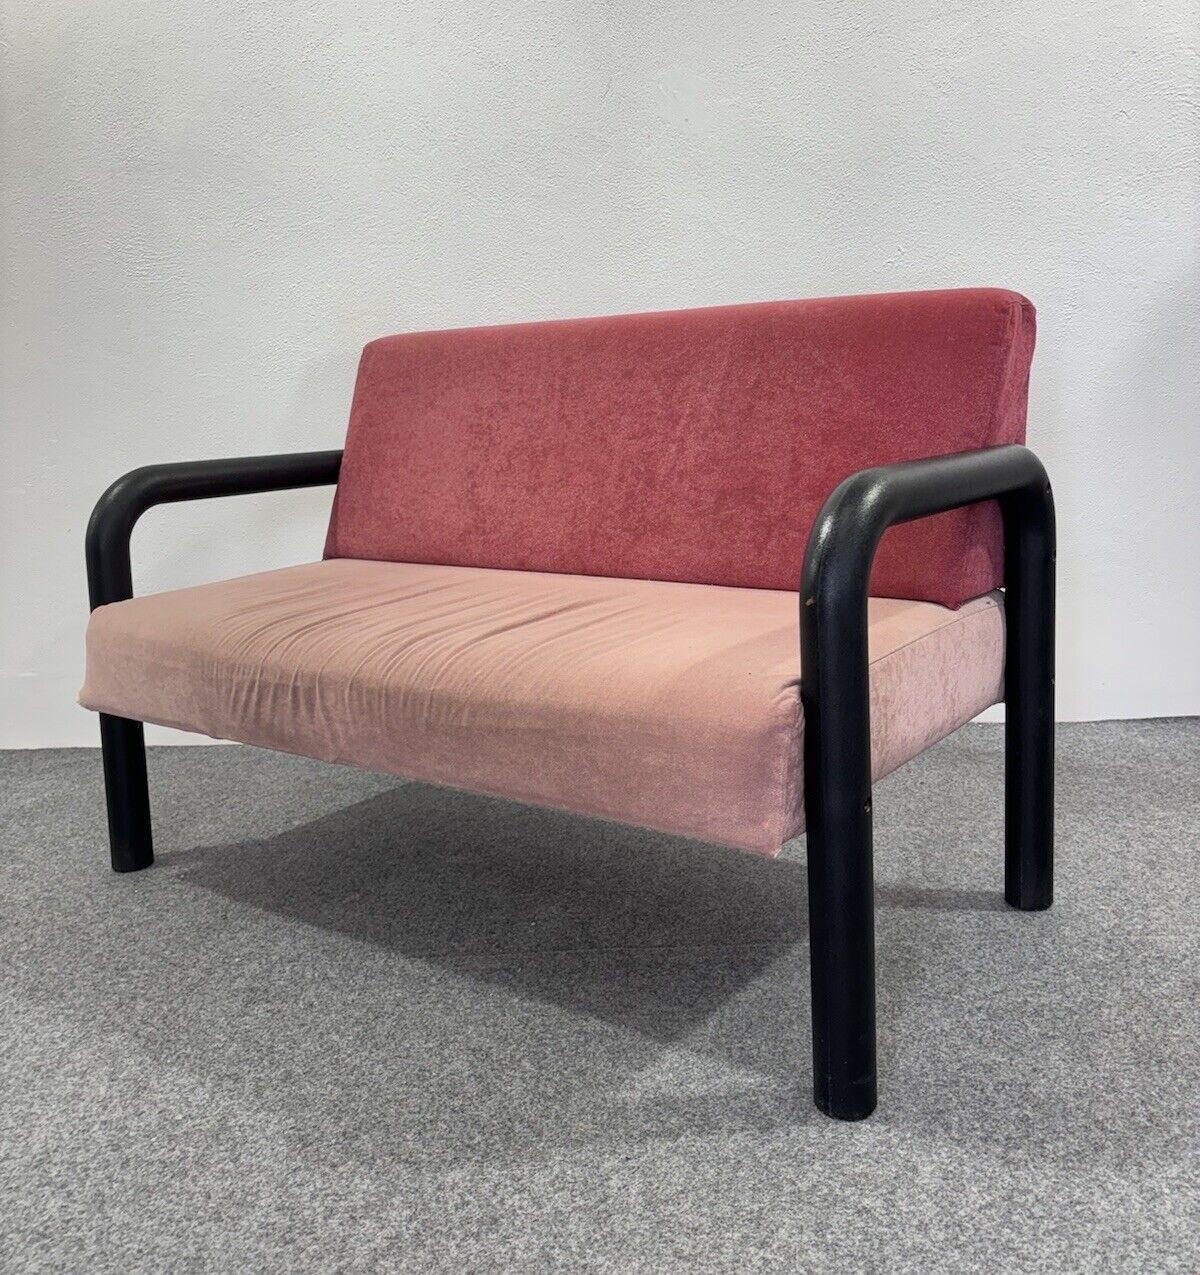 Memphis Style Two Seater Sofa Postmodernes Design 1980.

Zweisitzer-Sofa mit Polyurethanschaumstruktur, Stoffbezug in zwei Rosatönen.

Der Artikel ist in einem sehr guten konservativen Zustand, es gibt keine größeren ästhetischen oder strukturellen